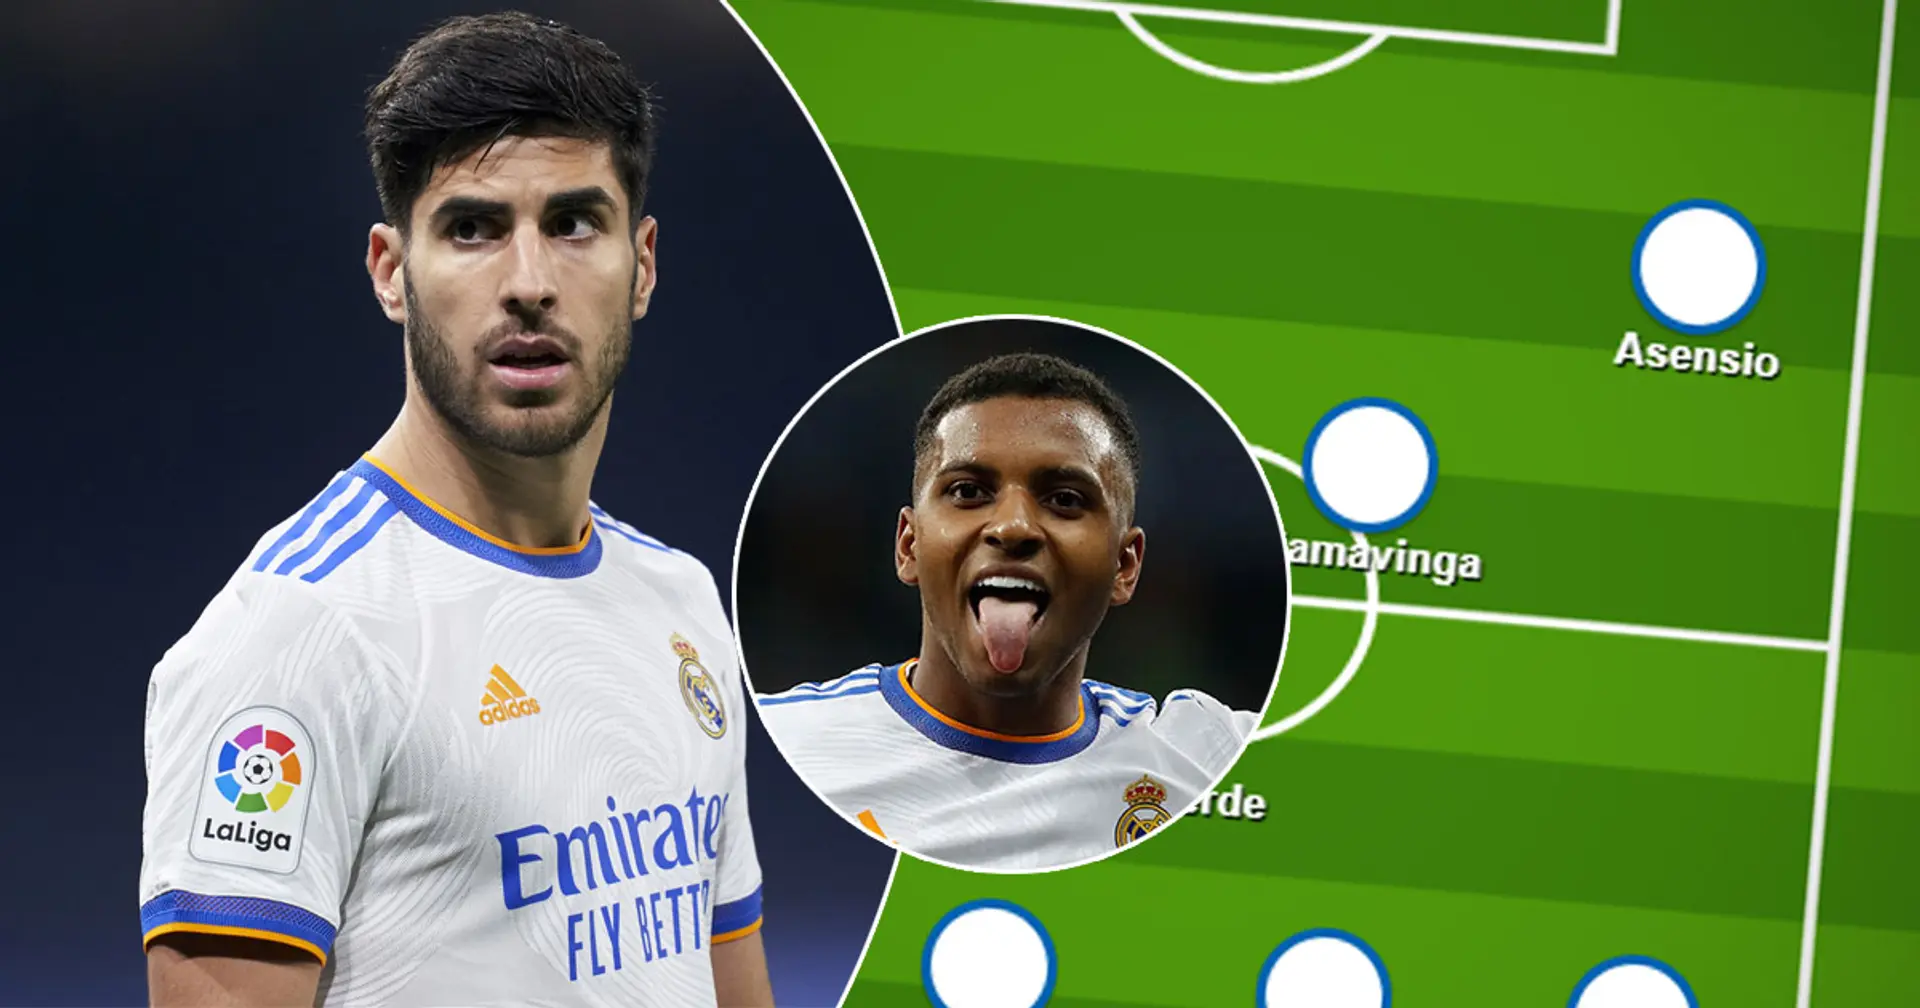 ¿Rodrygo o Asensio? Elige tu XI favorito del Real Madrid para el partido contra el Osasuna entre 2 opciones